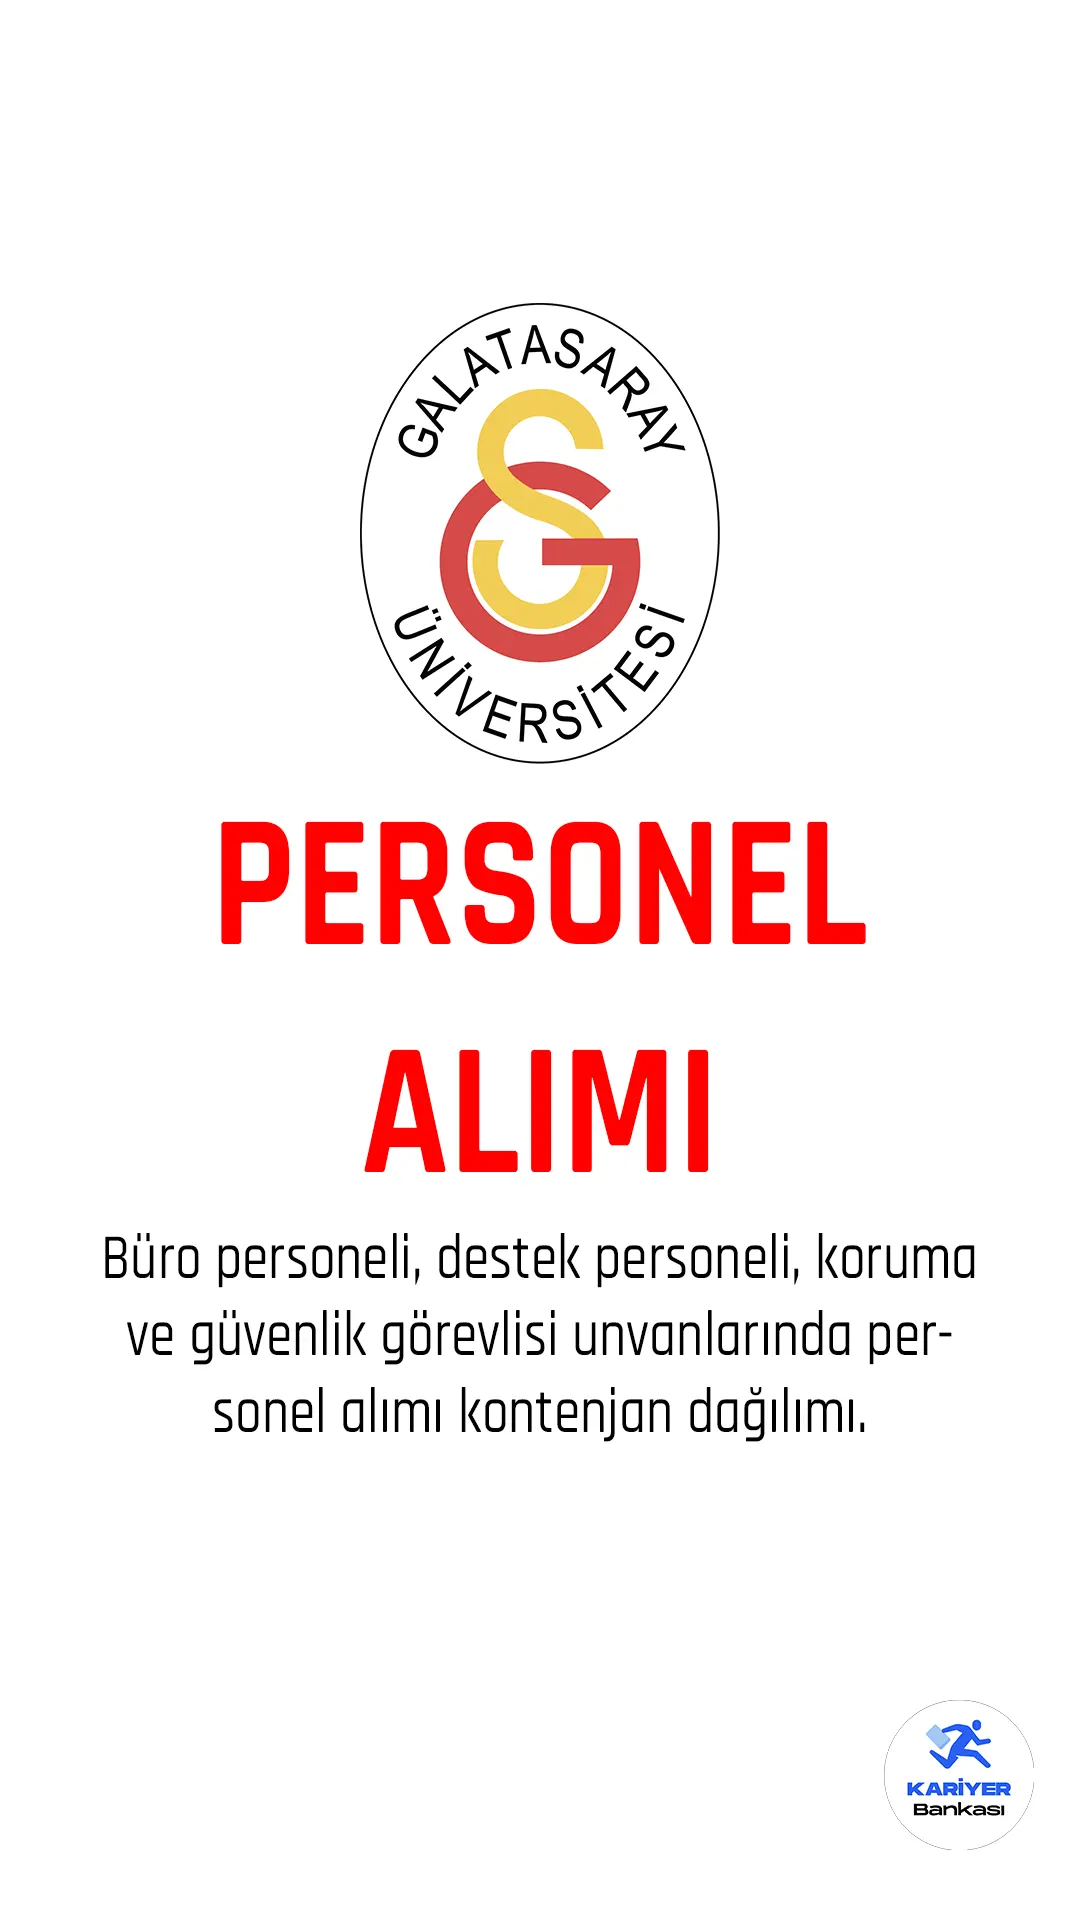 Galatasaray Üniversitesi personel alımı başvuruları devam ediyor.